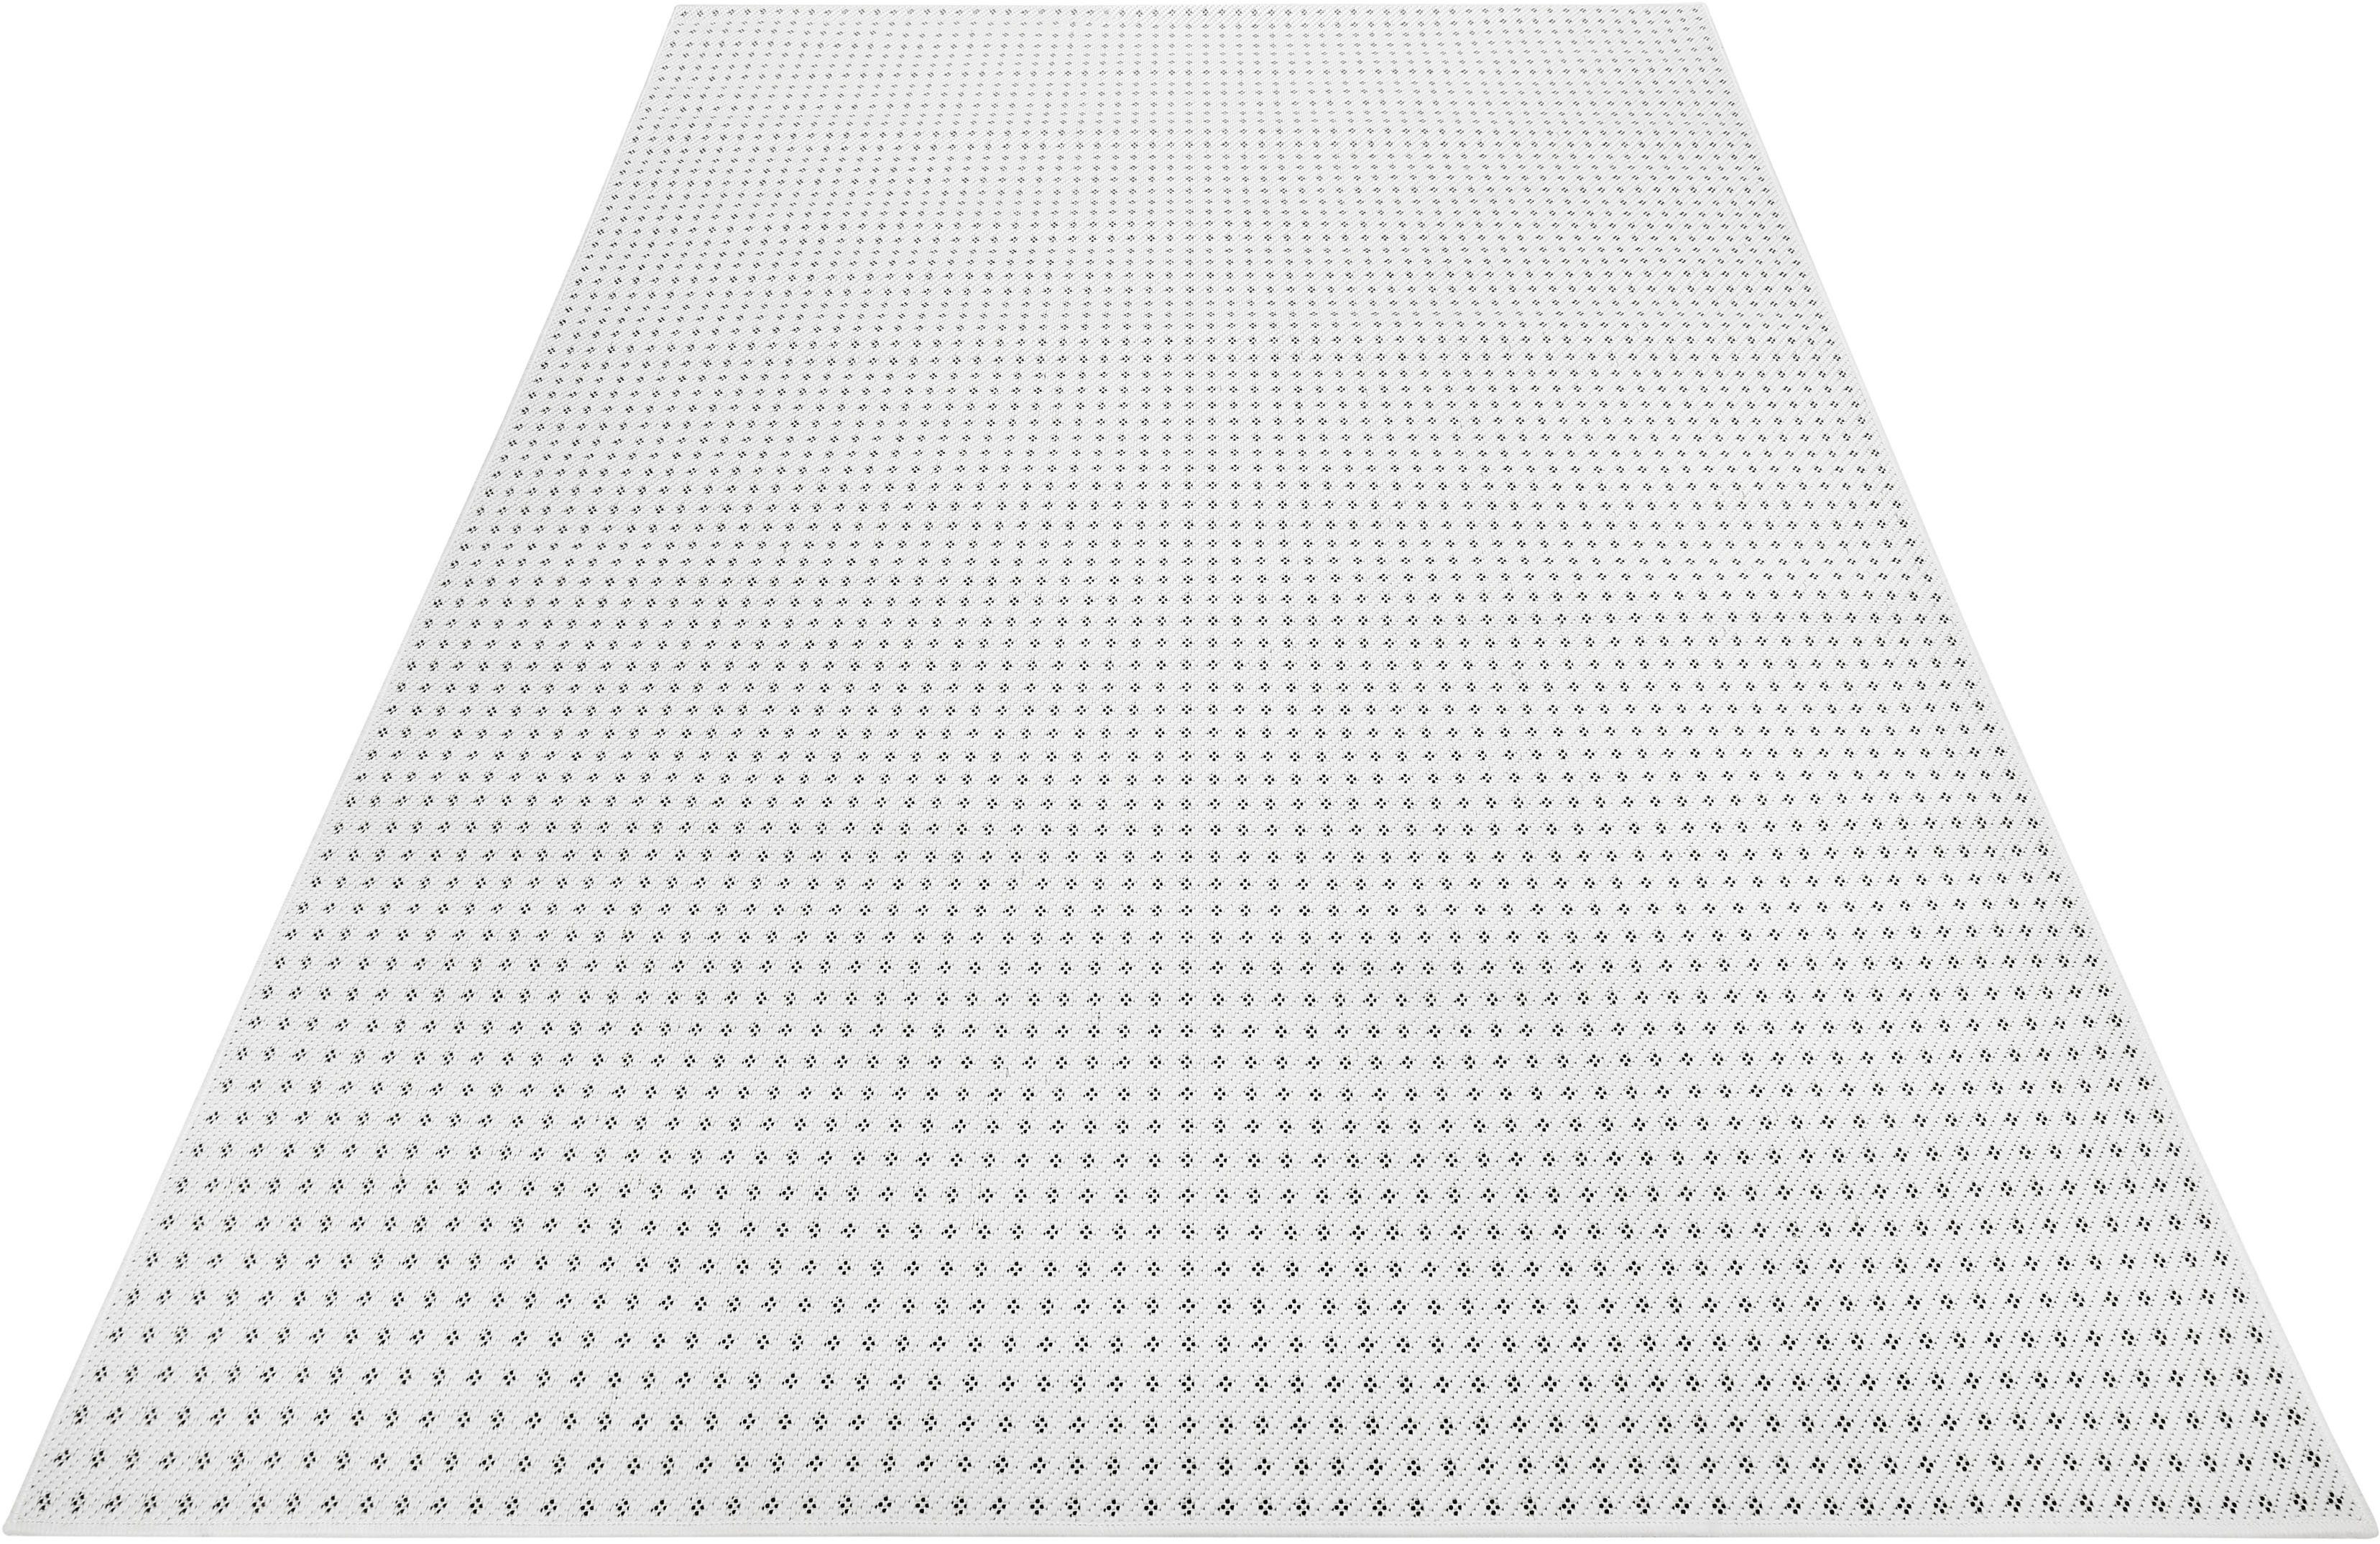 Teppich Monroe, Esprit, rechteckig, Höhe: 4 mm, In- und Outdoor geeignet